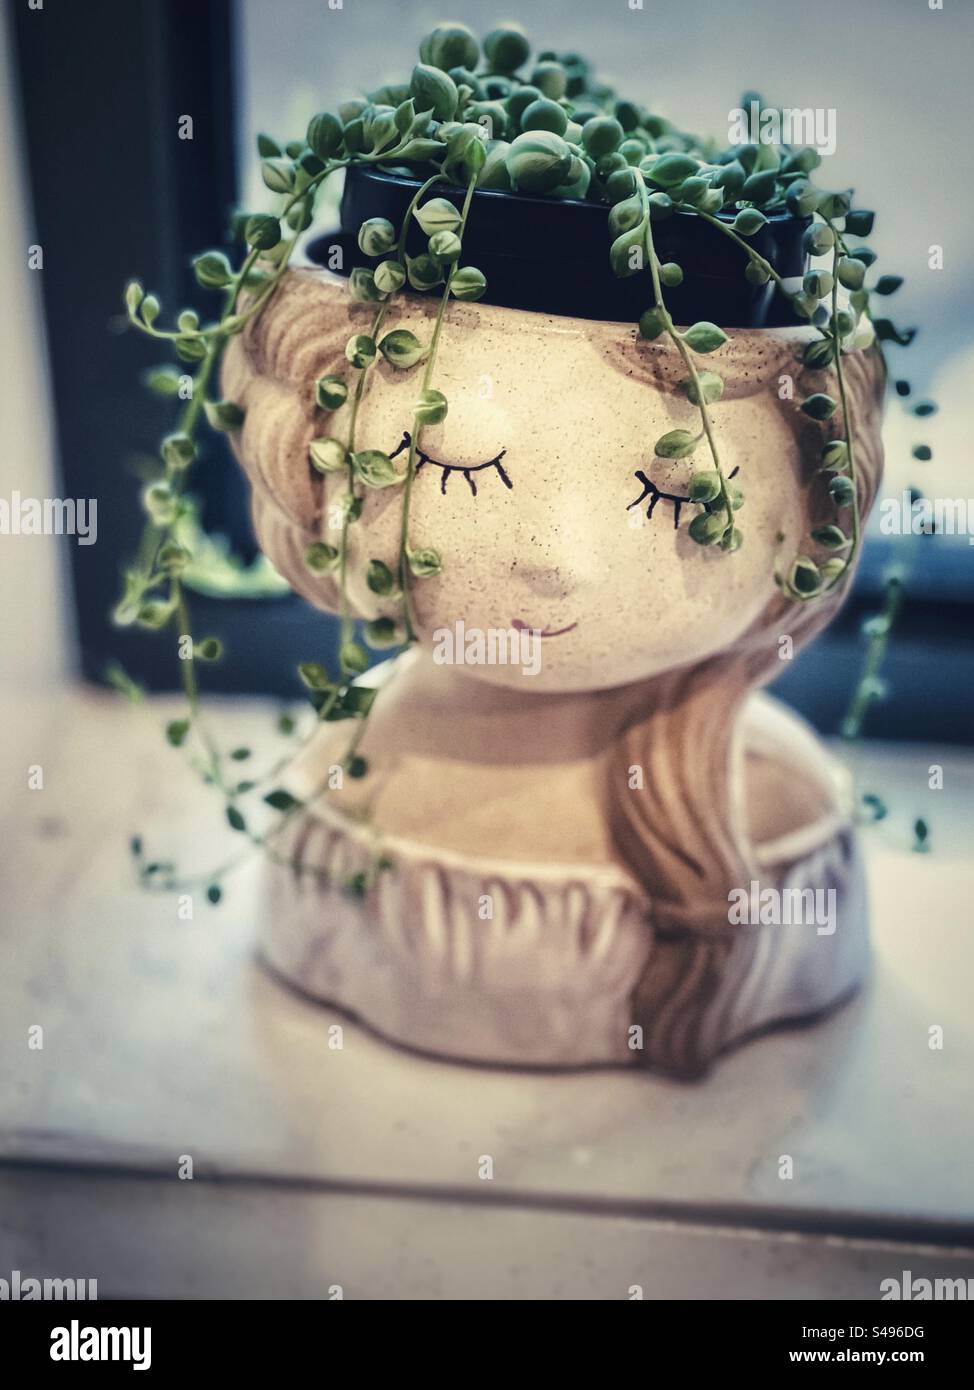 Corde di perle/Curio rowleyanus pianta succulenta in vaso di fiori a forma di testa di ragazza sul davanzale. Estetica vintage. Messa a fuoco selettiva. Capelli verdi vegetali. Foto Stock